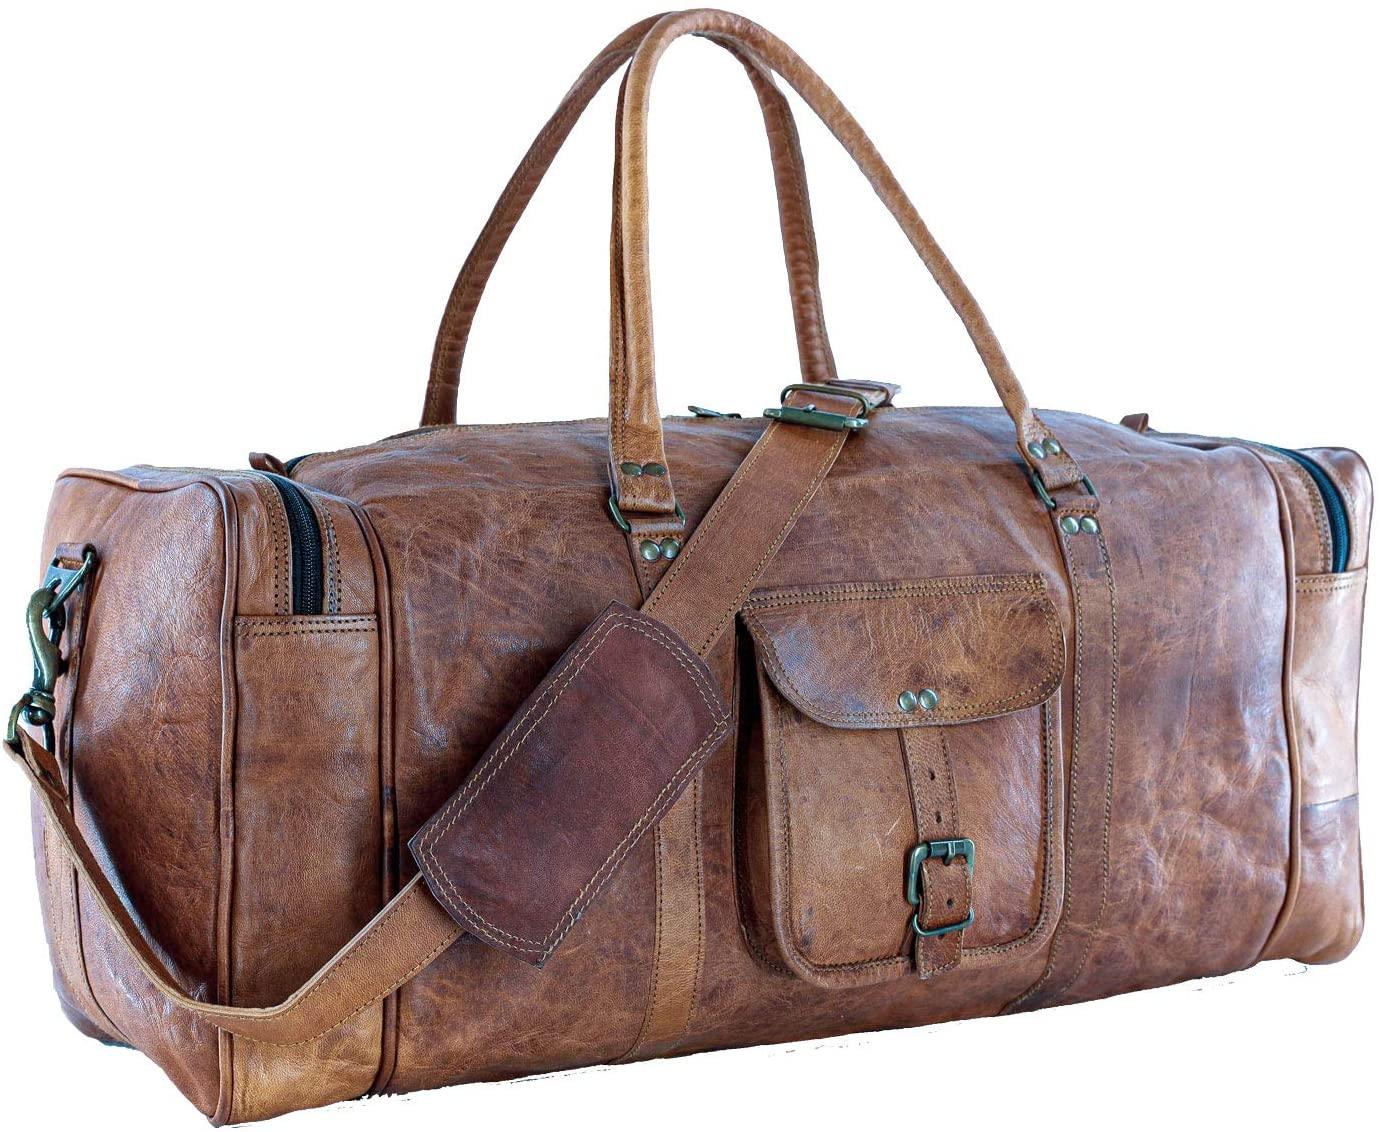 Full Grain Leather Duffel Bag - FR Fashion Co.